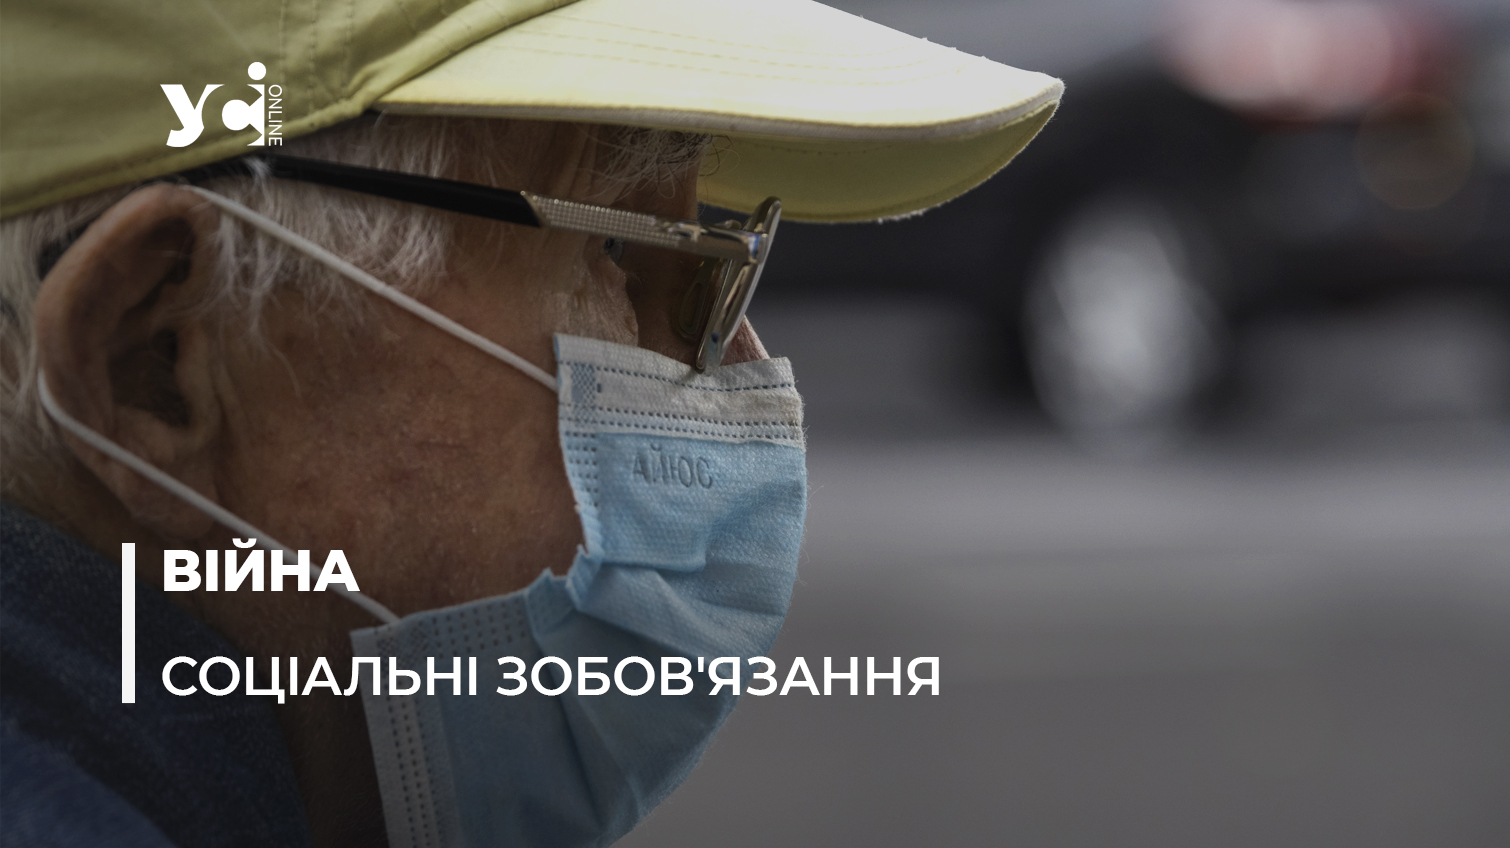 Україна: народження, смерть і пенсії на окупованій території «фото»